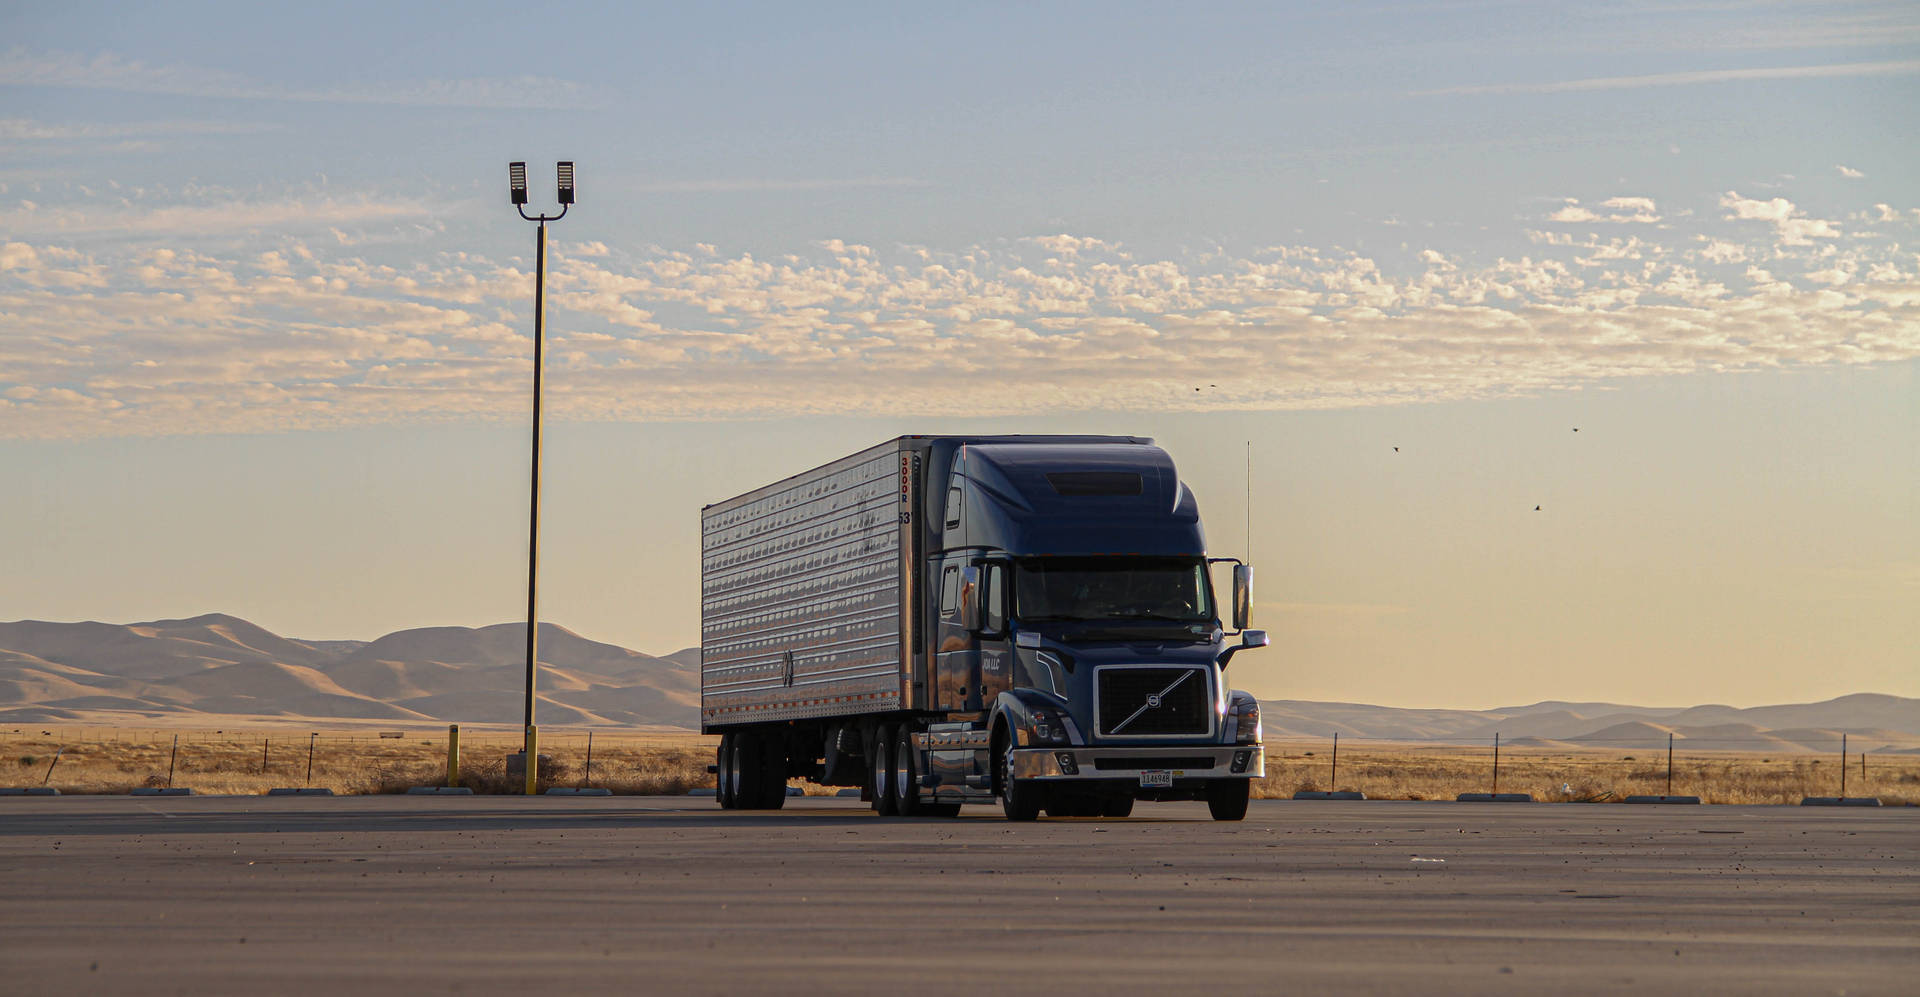 Trailer Truck At Kalifornien Desert Background